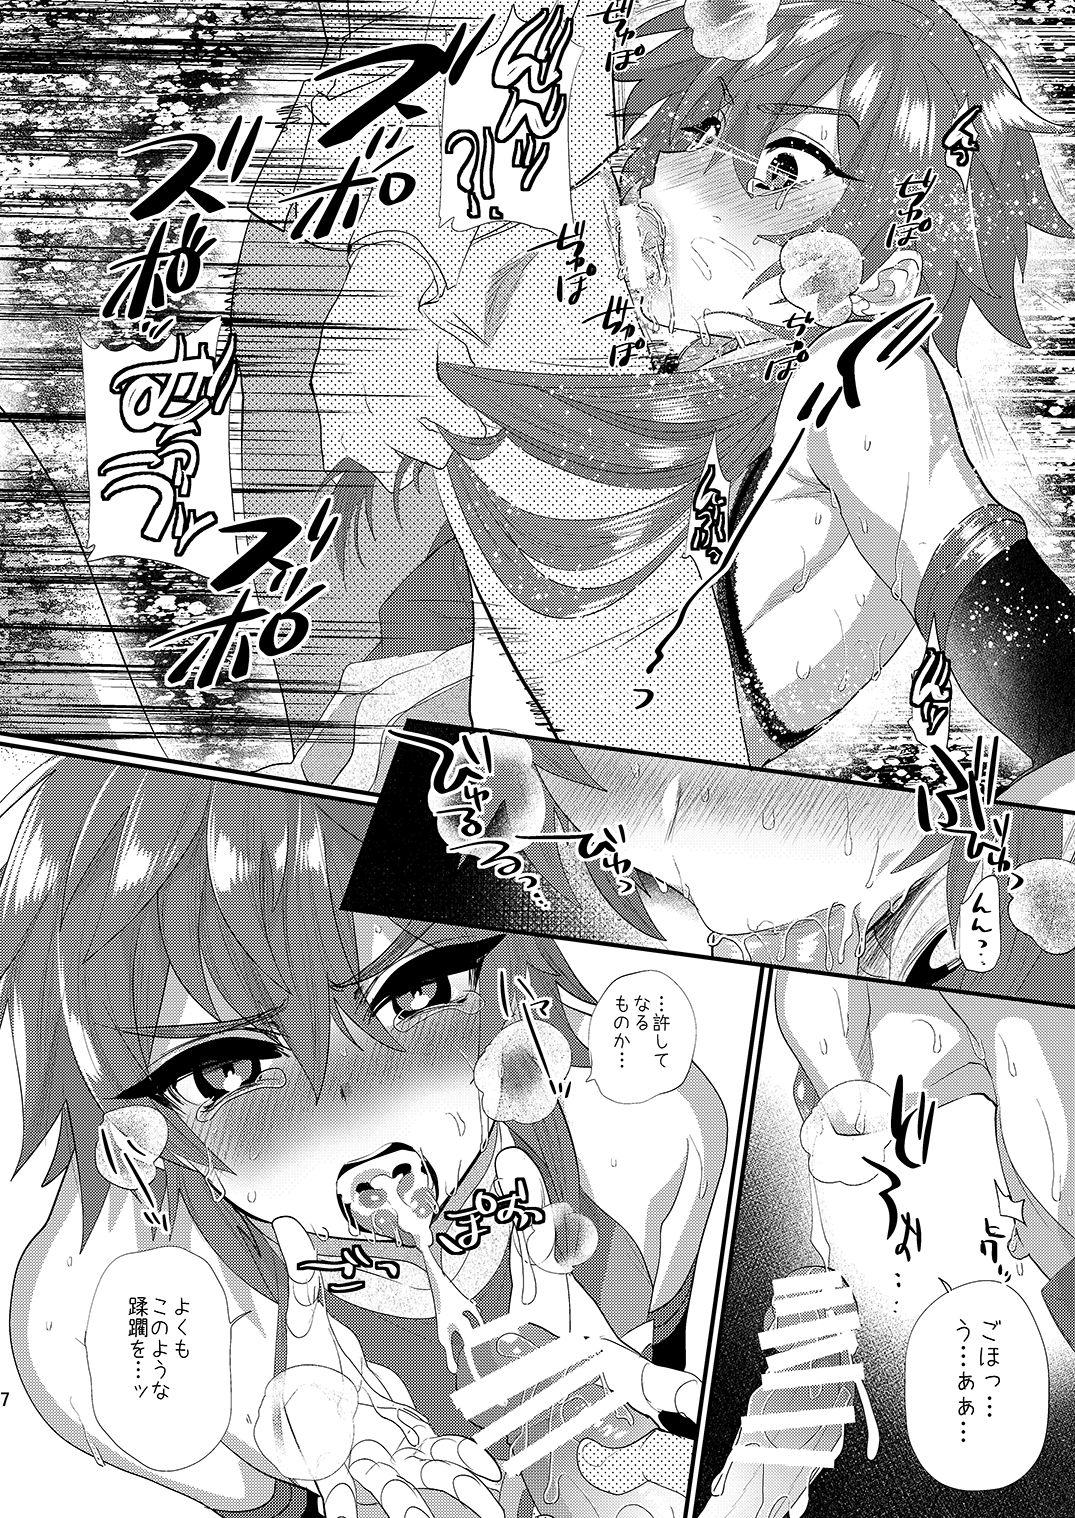 Dirty Kizuna LV0 no raama ou to himitsuno omajinai - Fate grand order Dicksucking - Page 7